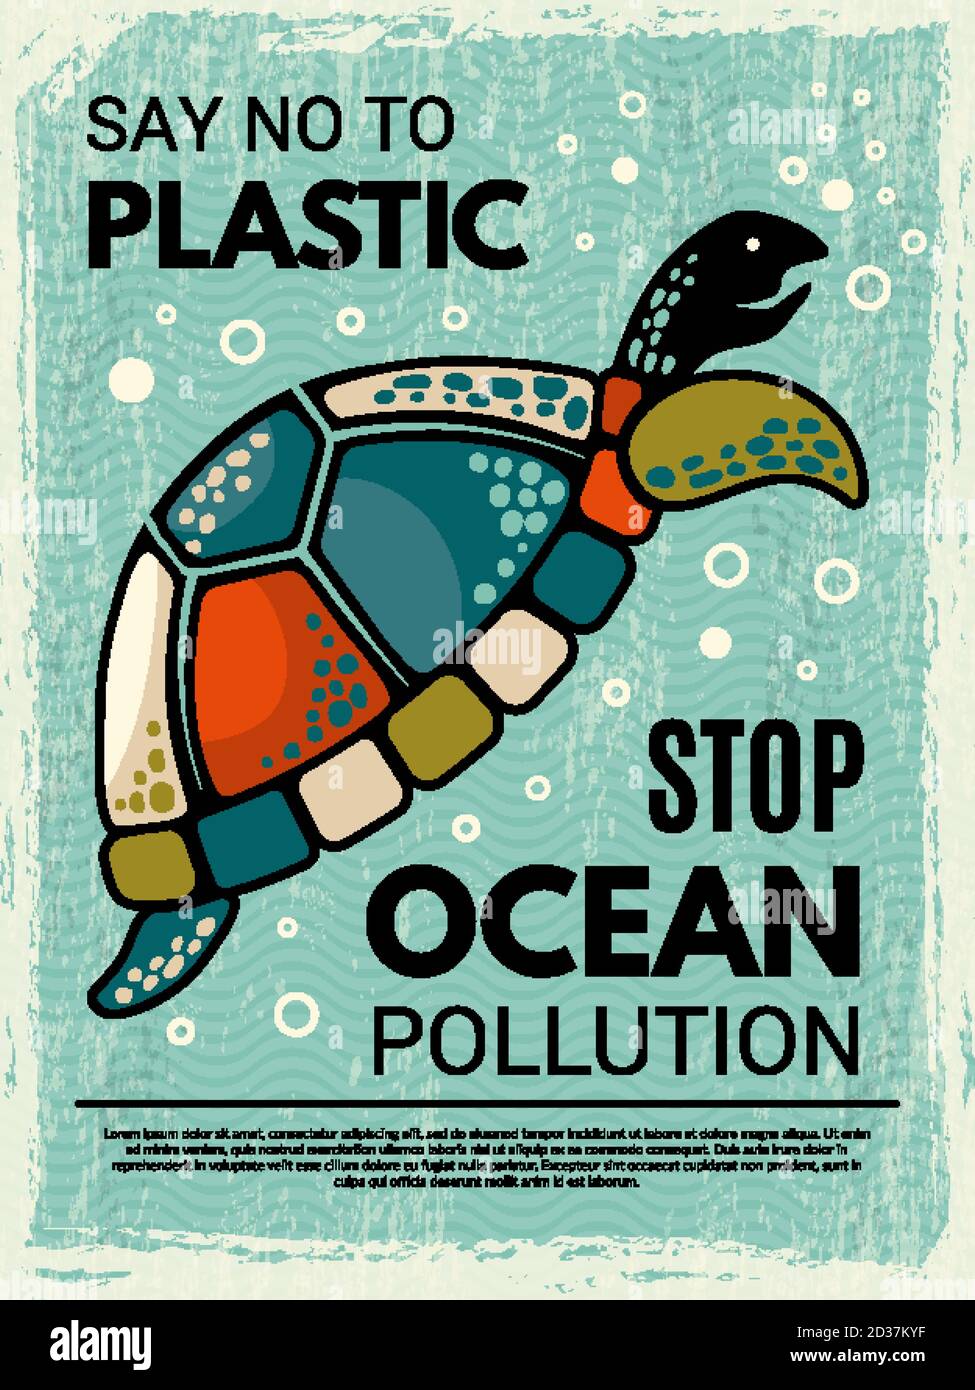 Schildkrötenposter. Dekorative kreative Design Plakette mit Bild von stilisierten Schildkröte Ozean oder Meerestier Vektor Stock Vektor